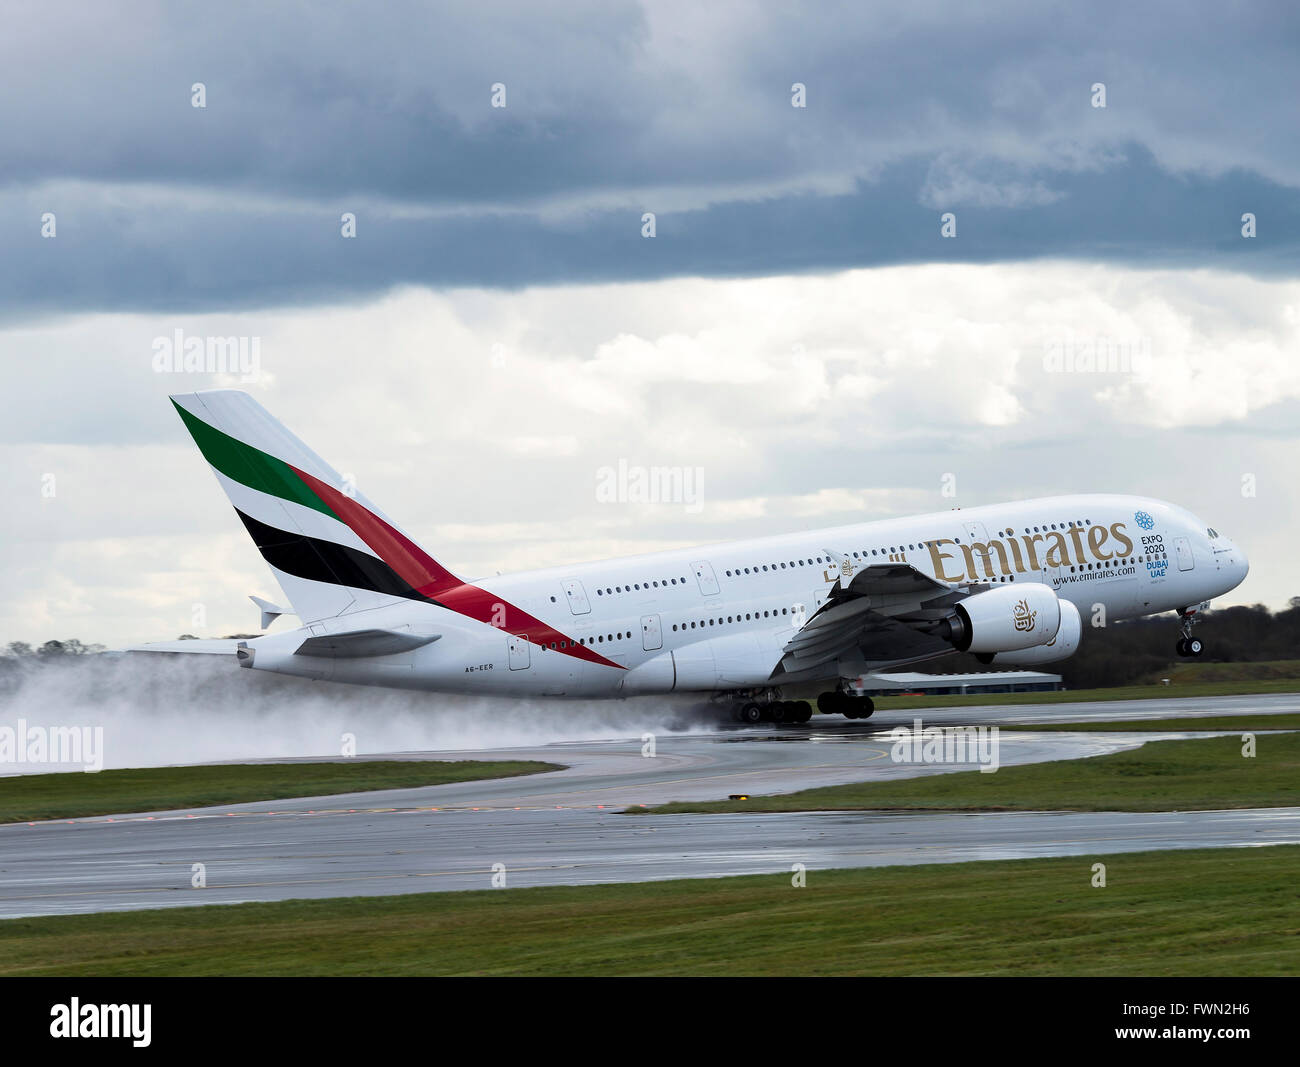 Emirates Airline avion Airbus A380-862 A6-EER décolle dans la pluie de l'Aéroport International de Manchester en Angleterre Royaume-Uni Banque D'Images